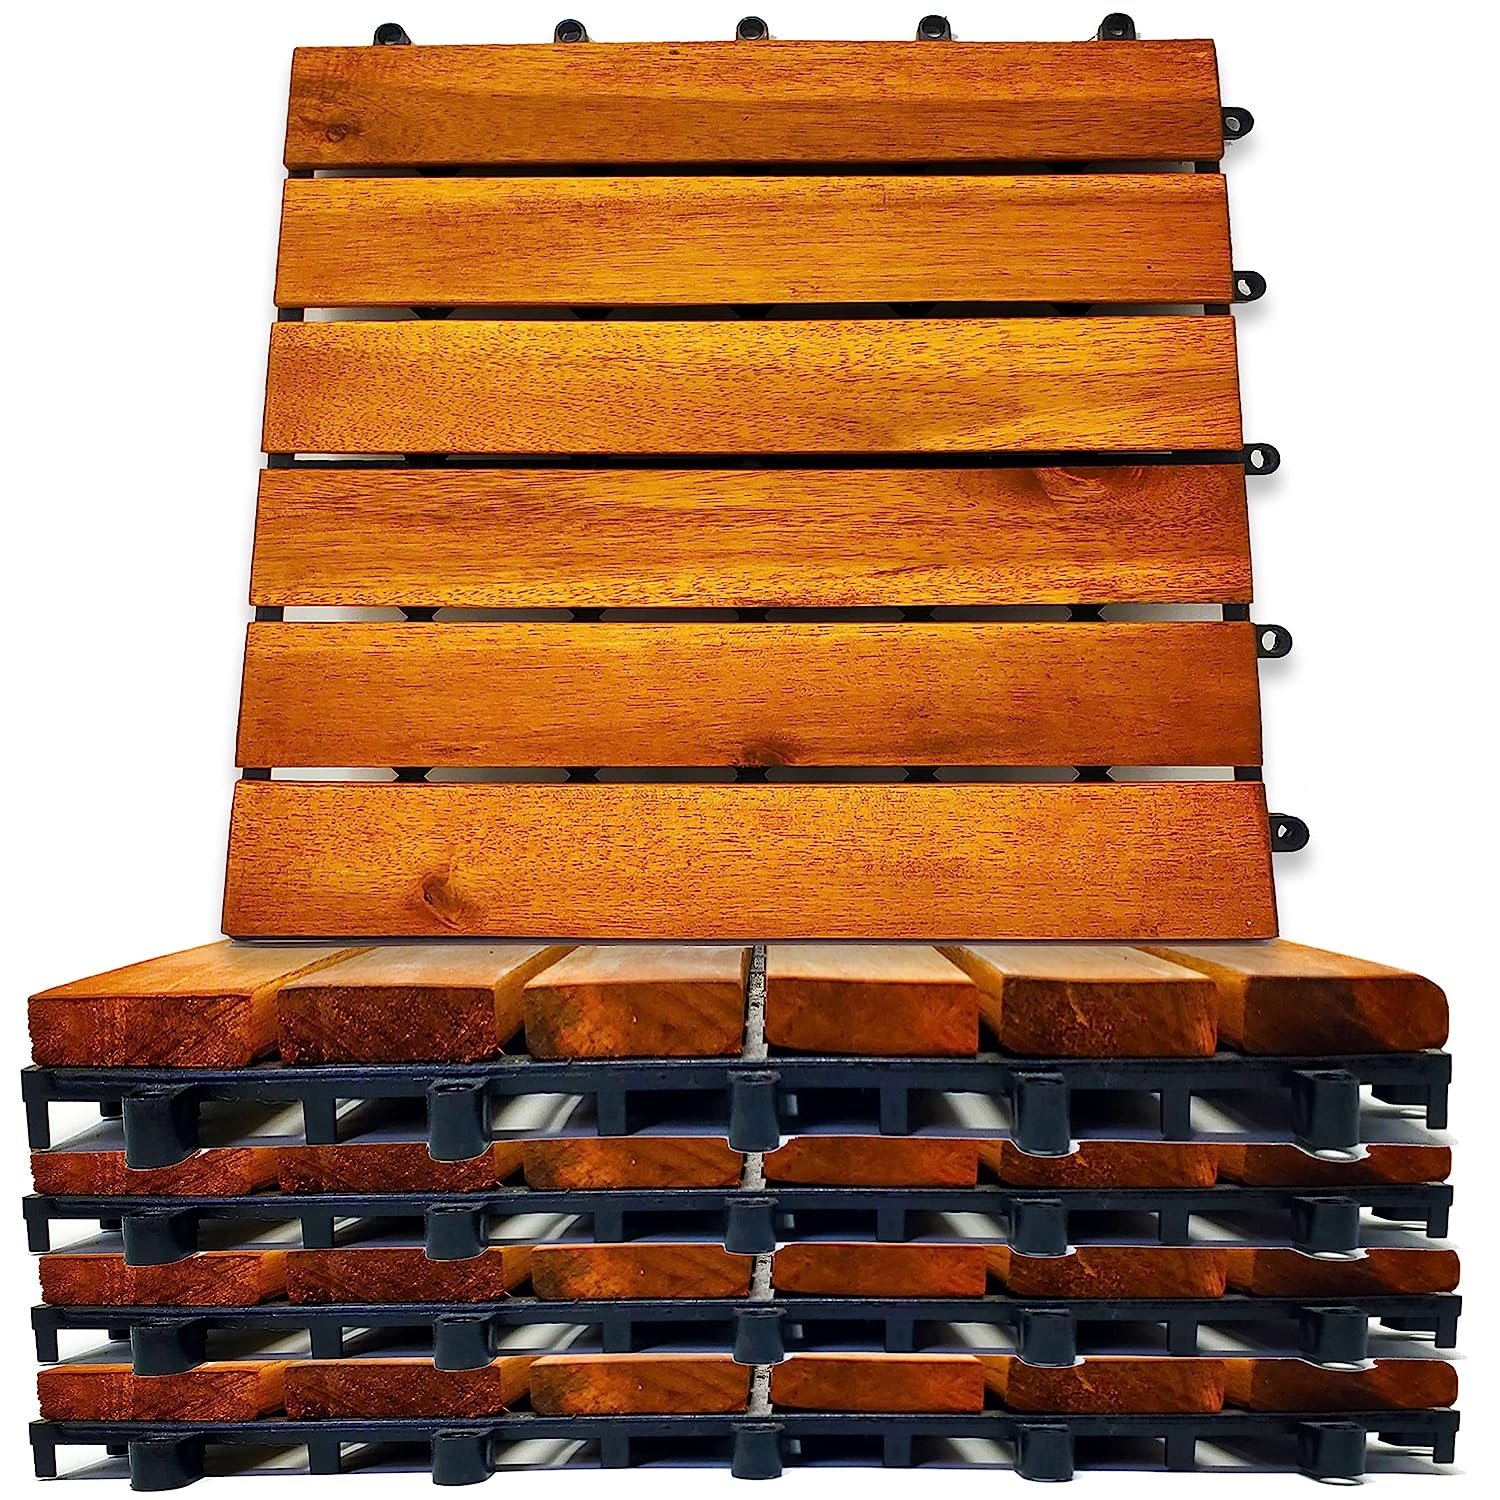 Interlocking Deck Tiles 8 Pack - Snap Together Wood [...]